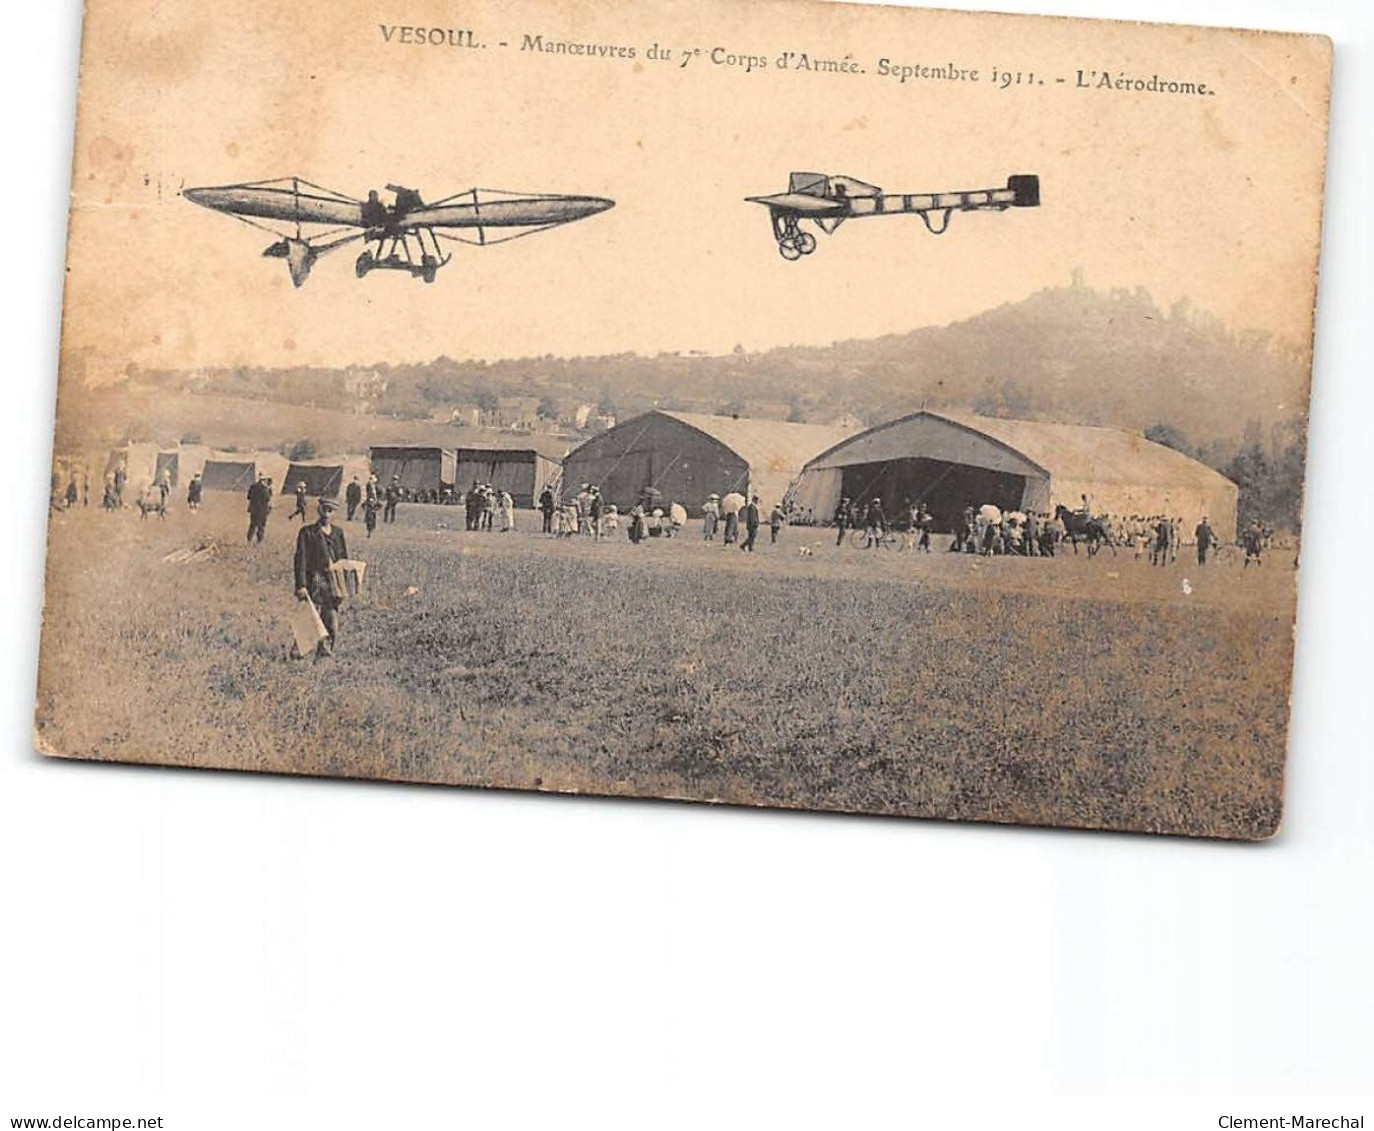 VESOUL - Manoeuvres Du 7e Corps D'Armée - Septembre 1911 - L'Aérodrome - état - Vesoul